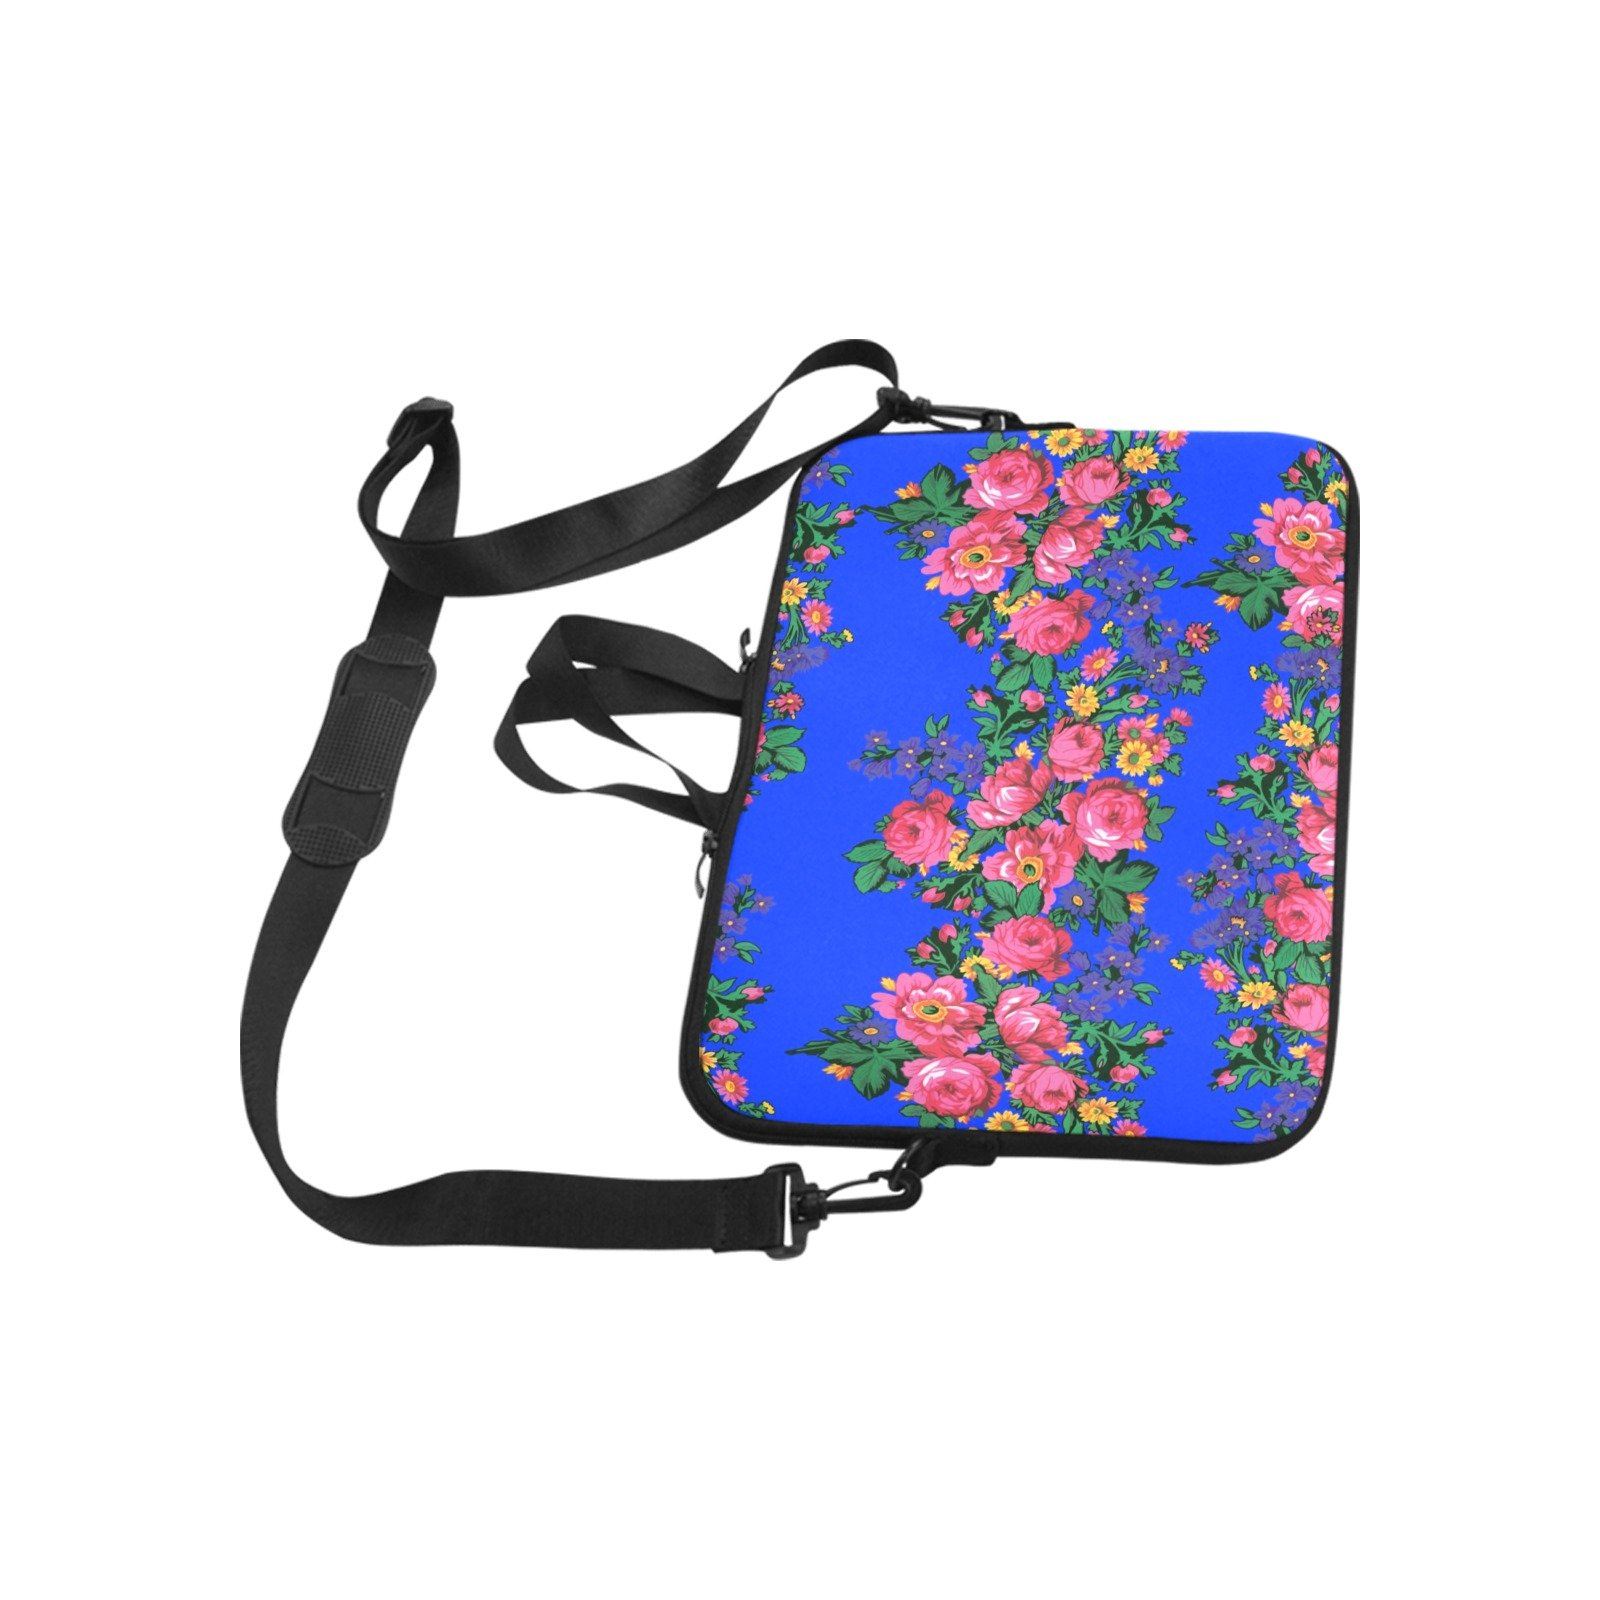 Kokum's Revenge Royal Laptop Handbags 11" bag e-joyer 